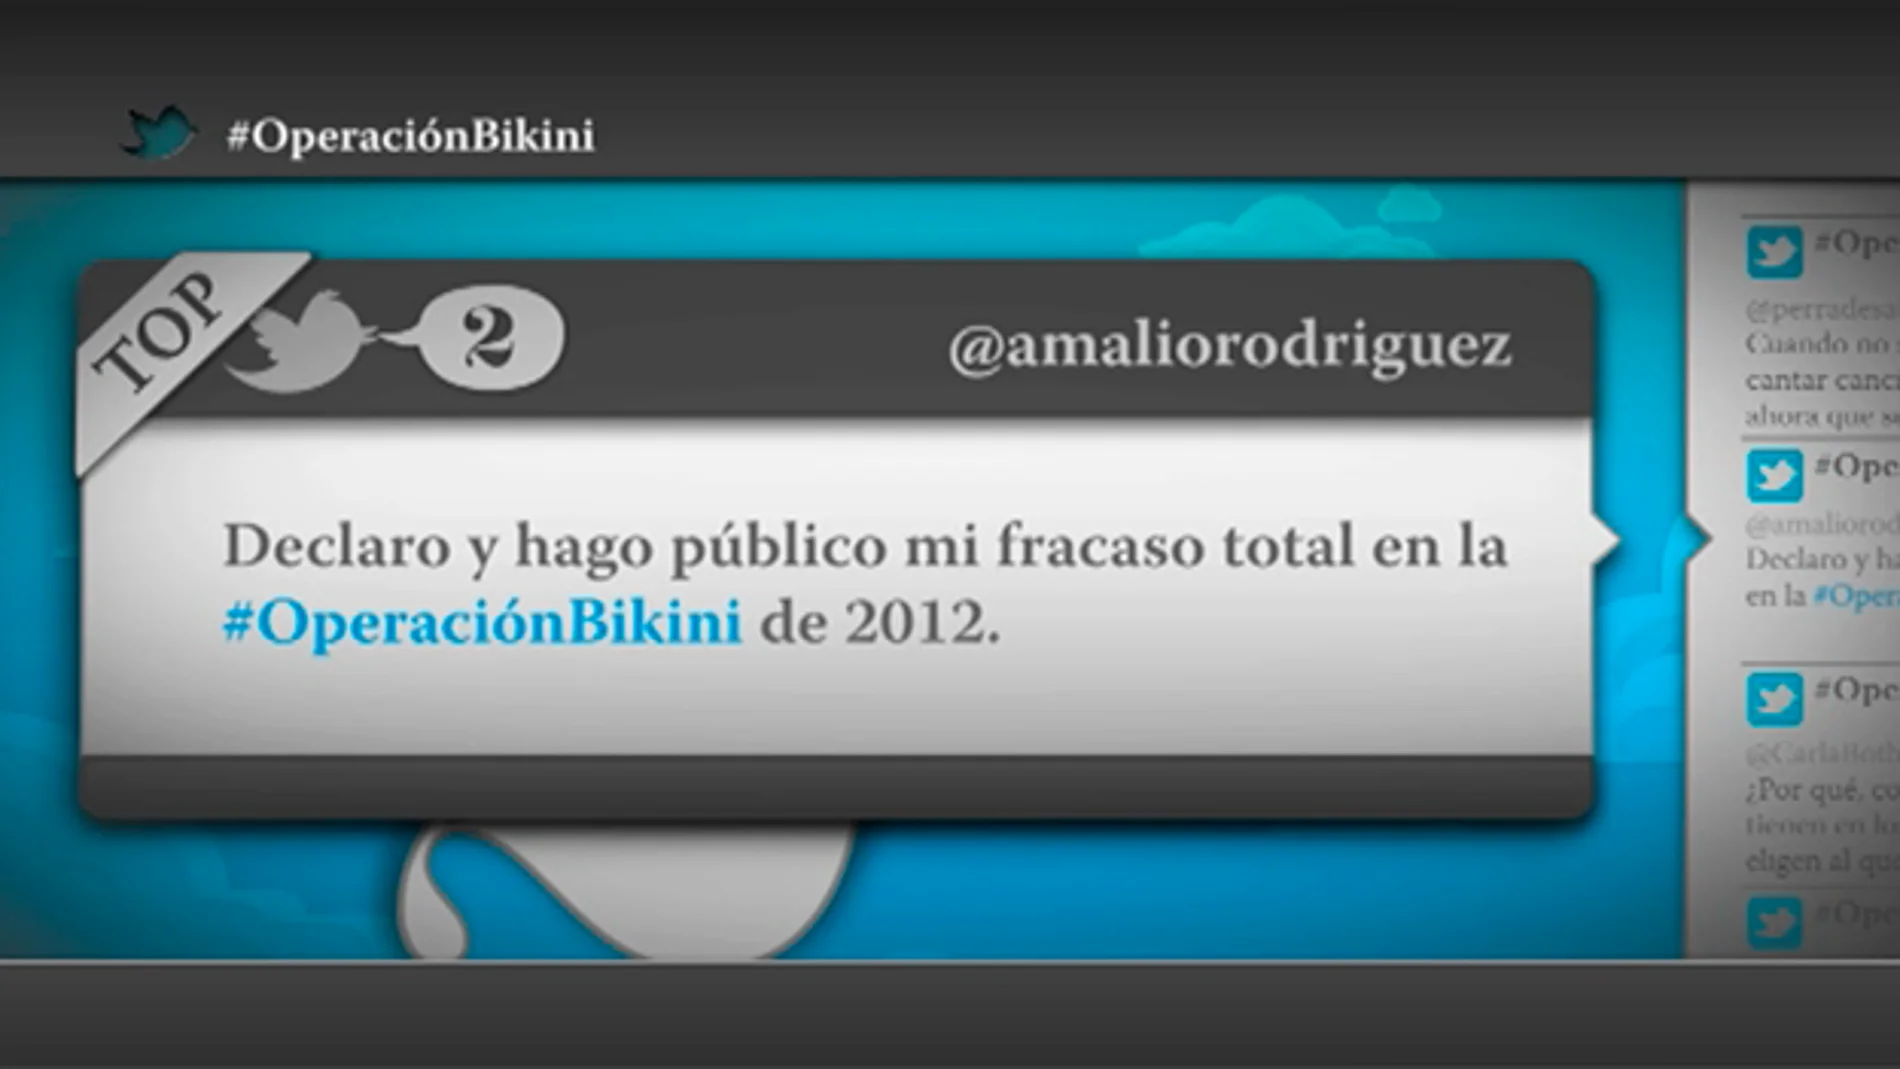 @amaliorodriguez: "Declaro y hago público mi fracaso total en la Operación Bikini de 2012"